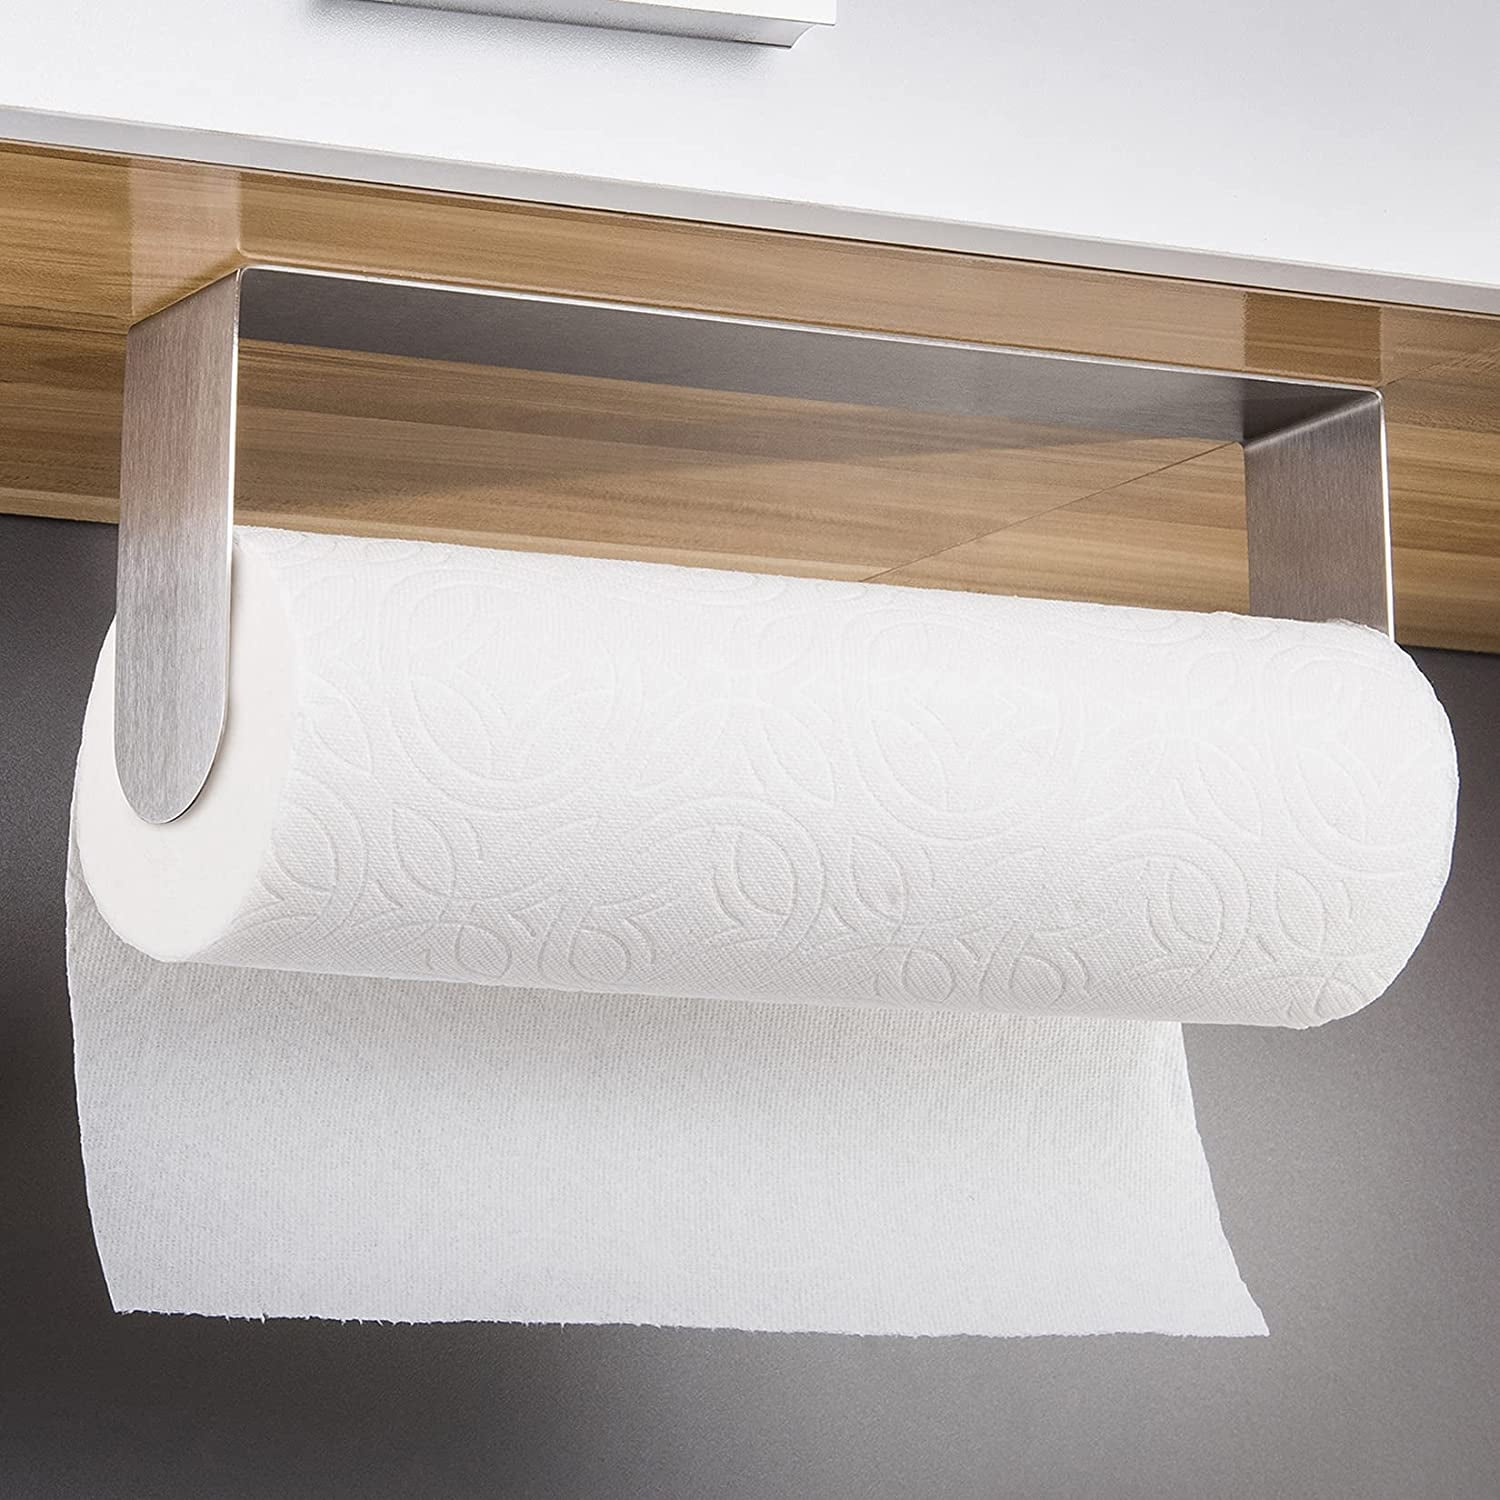 28cm Adhesive Paper Towel Holder Under Cabinet For Kitchen Bathroom Brushed 